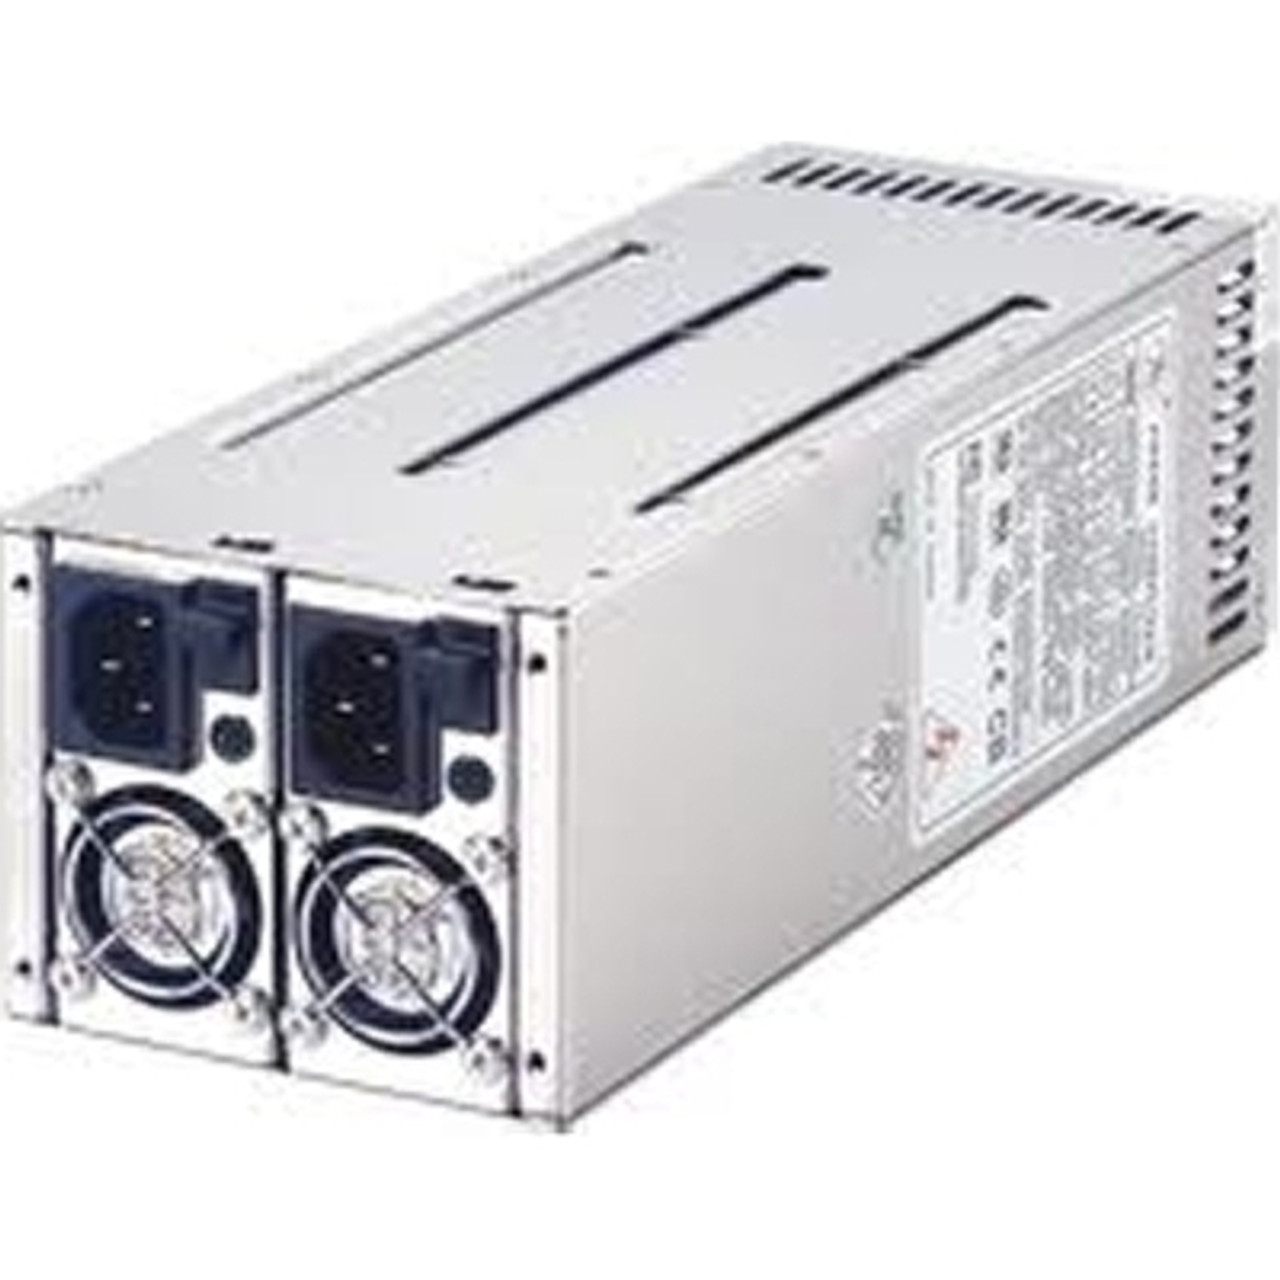 DELL 8NK9R 495 Watt Power Supply For R530 R630,r730,r730xd,t430,t630